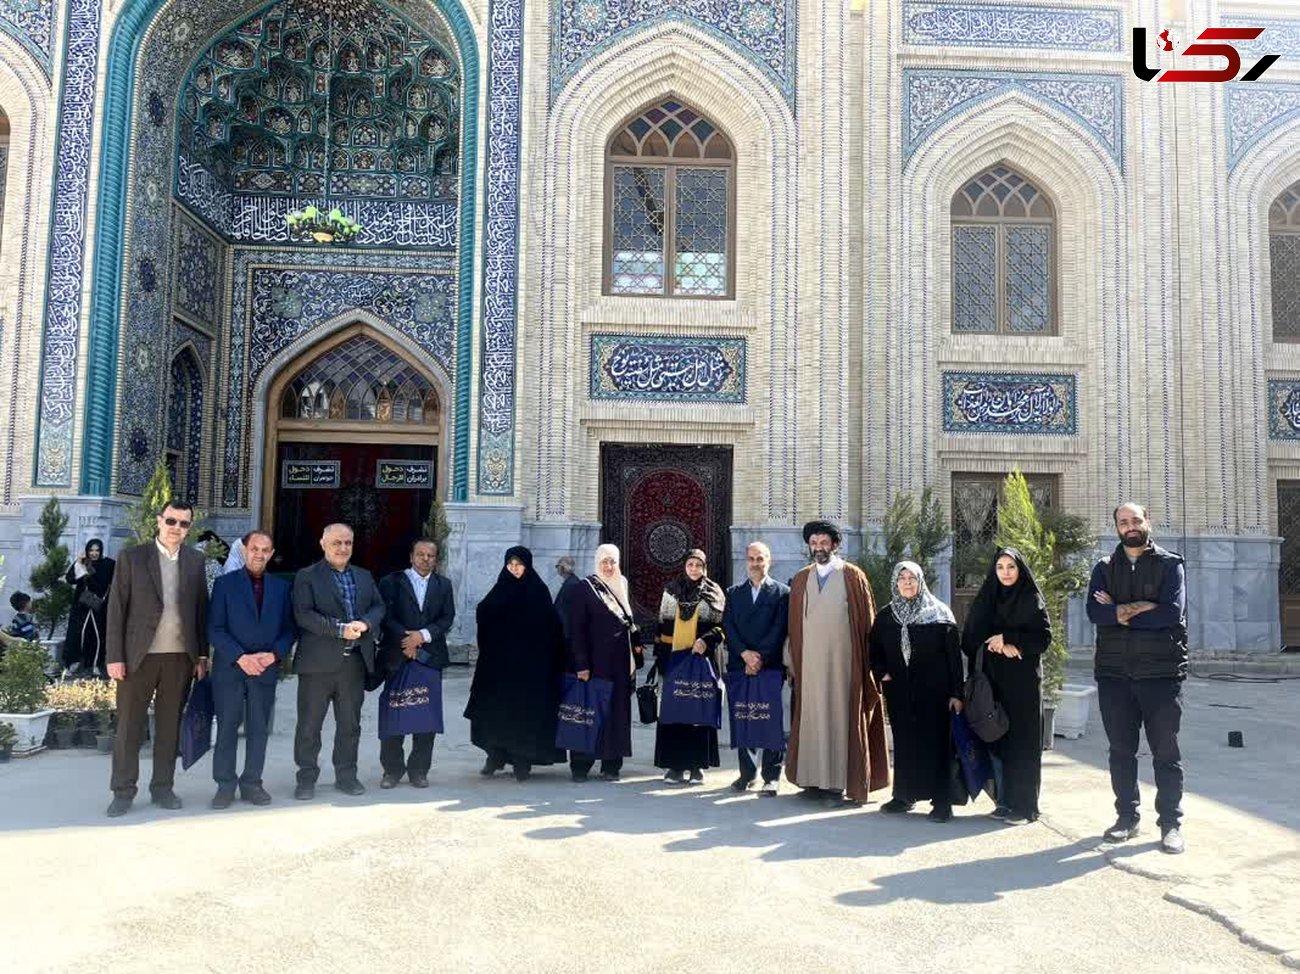 بازدید مهمانان همایش مطالعات قرآنی از منظر اروپائیان از آستان مقدس حضرت زینب بنت موسی (س) و بنیاد آلا